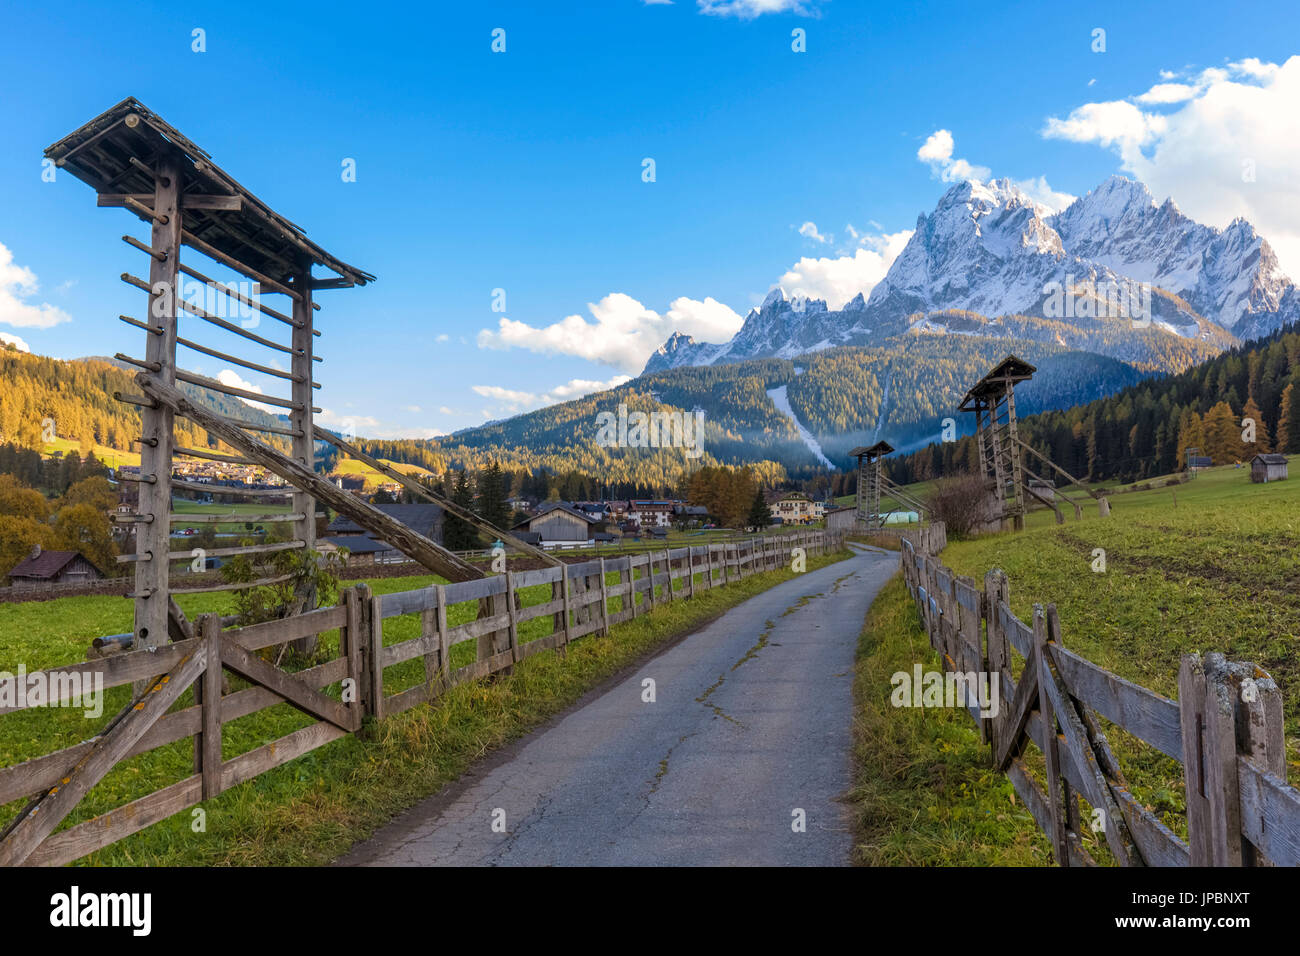 Europa, Italien, Südtirol, Bozen. Trockengestelle für Heu in der Landschaft von Sexten Tal, Dolomiten Stockfoto